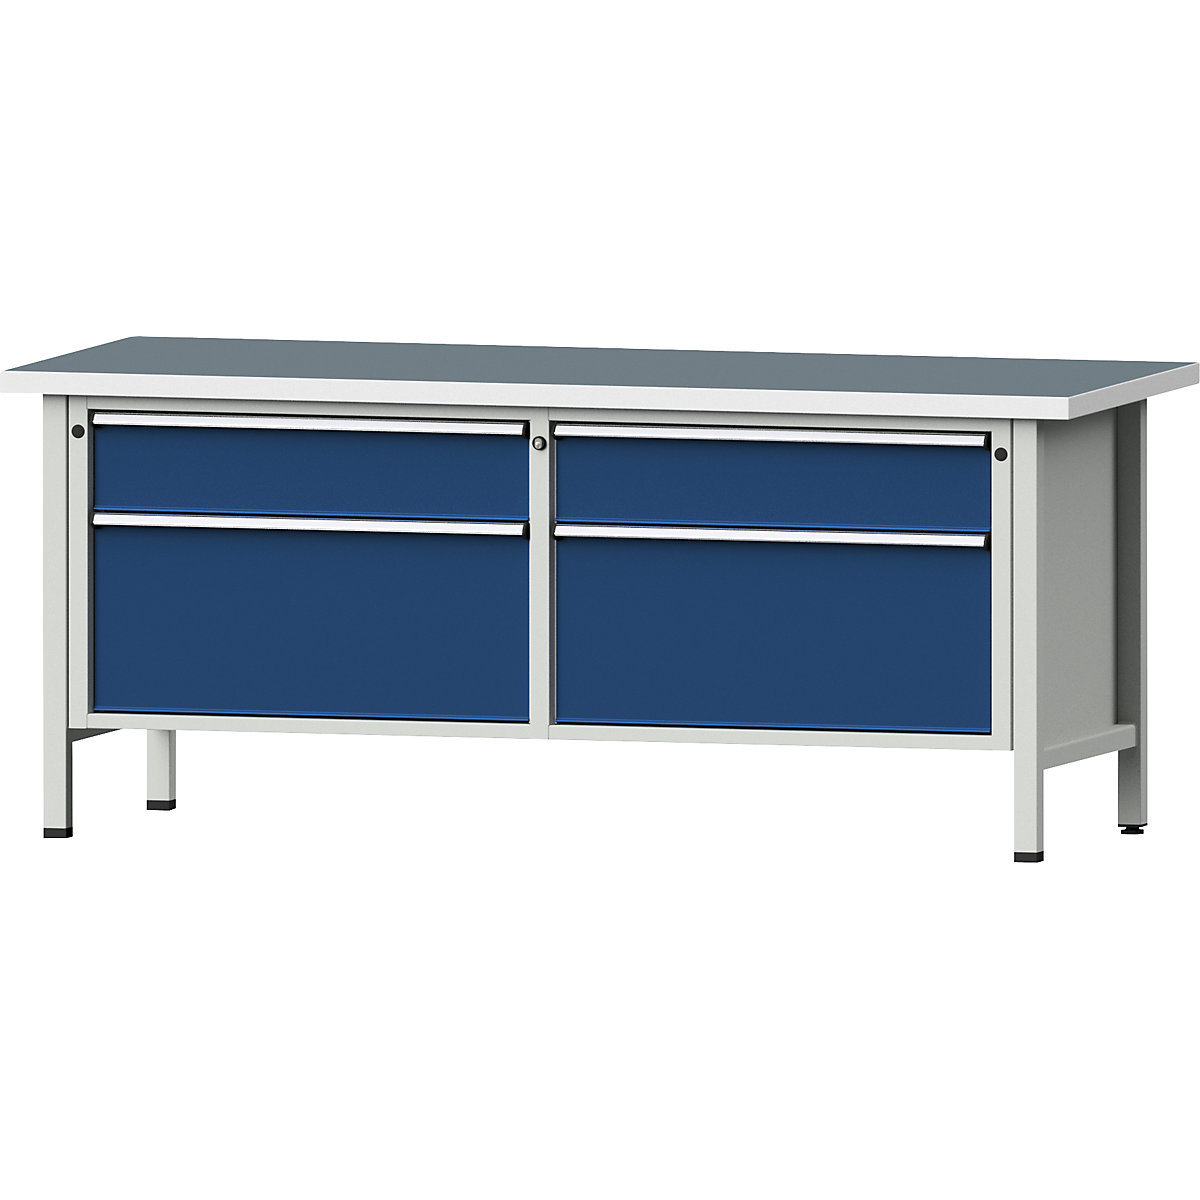 Stół warsztatowy z szufladami XL/XXL, konstrukcja ramowa – ANKE, szer. 2000 mm, 4 szuflady, blat uniwersalny, front niebieski gencjanowy-9